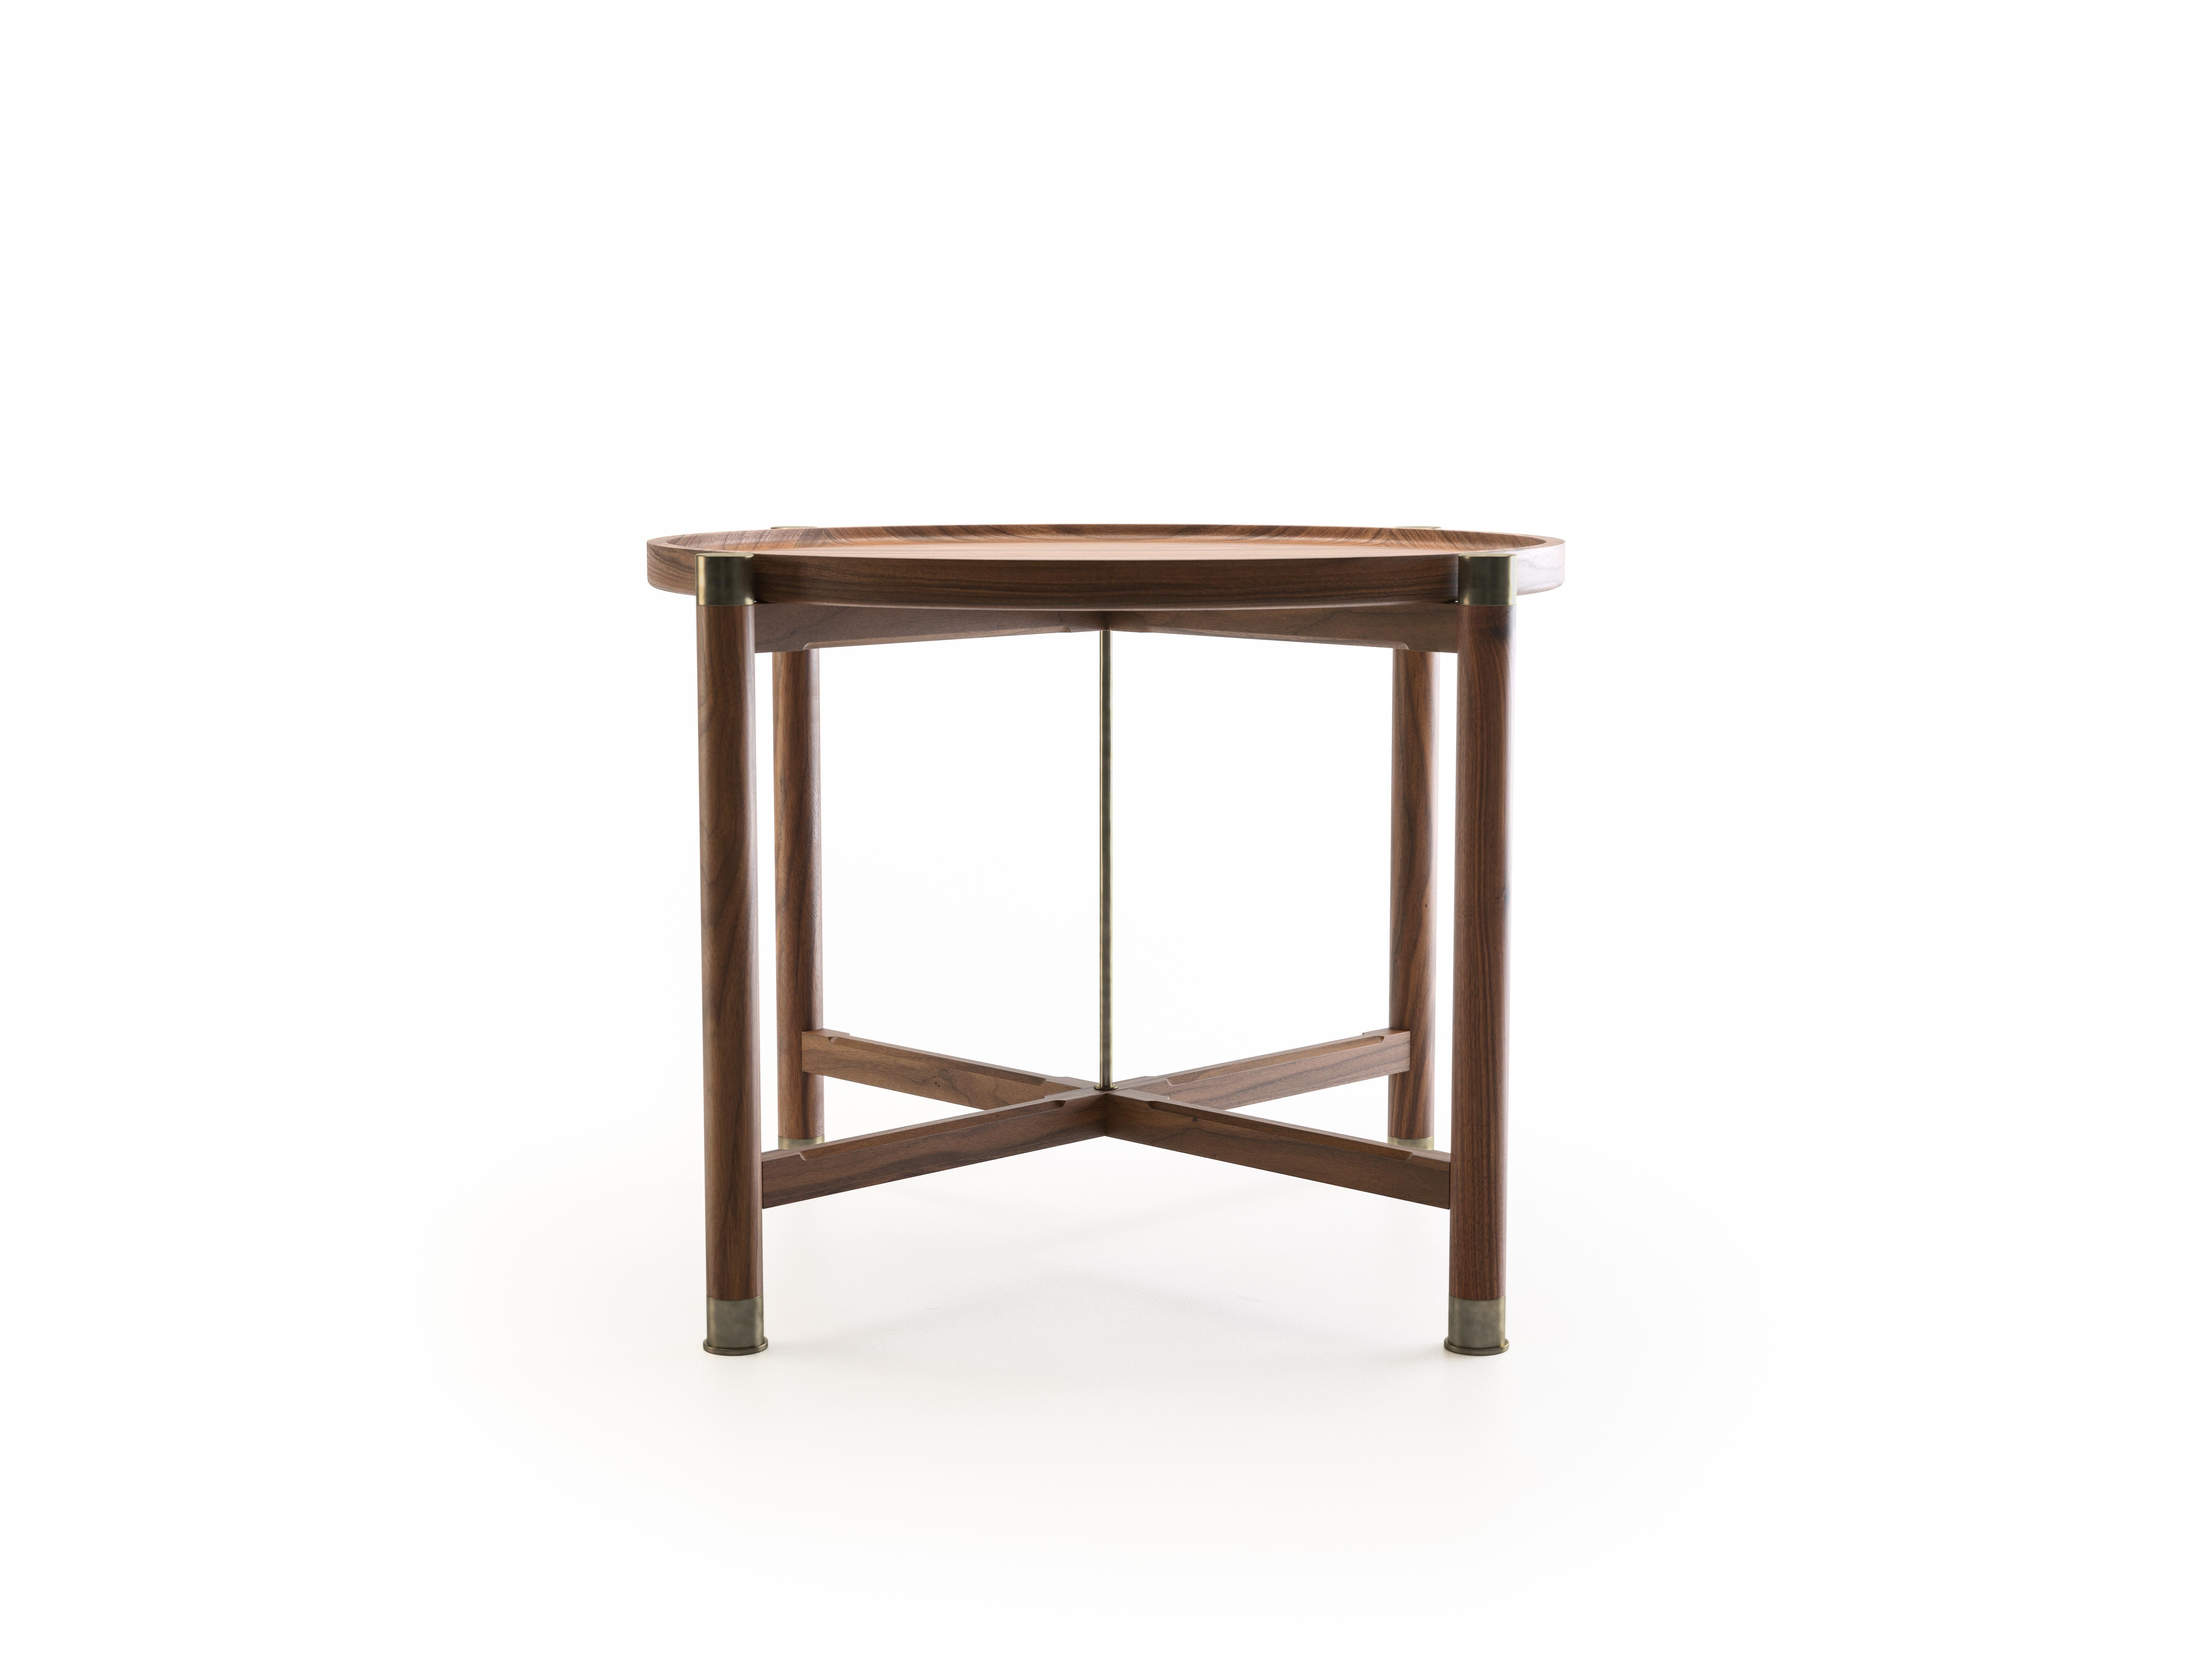 La table d'appoint Otto est une table aux proportions généreuses dont la forme est simple et bien articulée.
Disponible en noyer ou en chêne, il se caractérise par un plateau de coupe rond, d'importantes ferrures en laiton antique, une tige